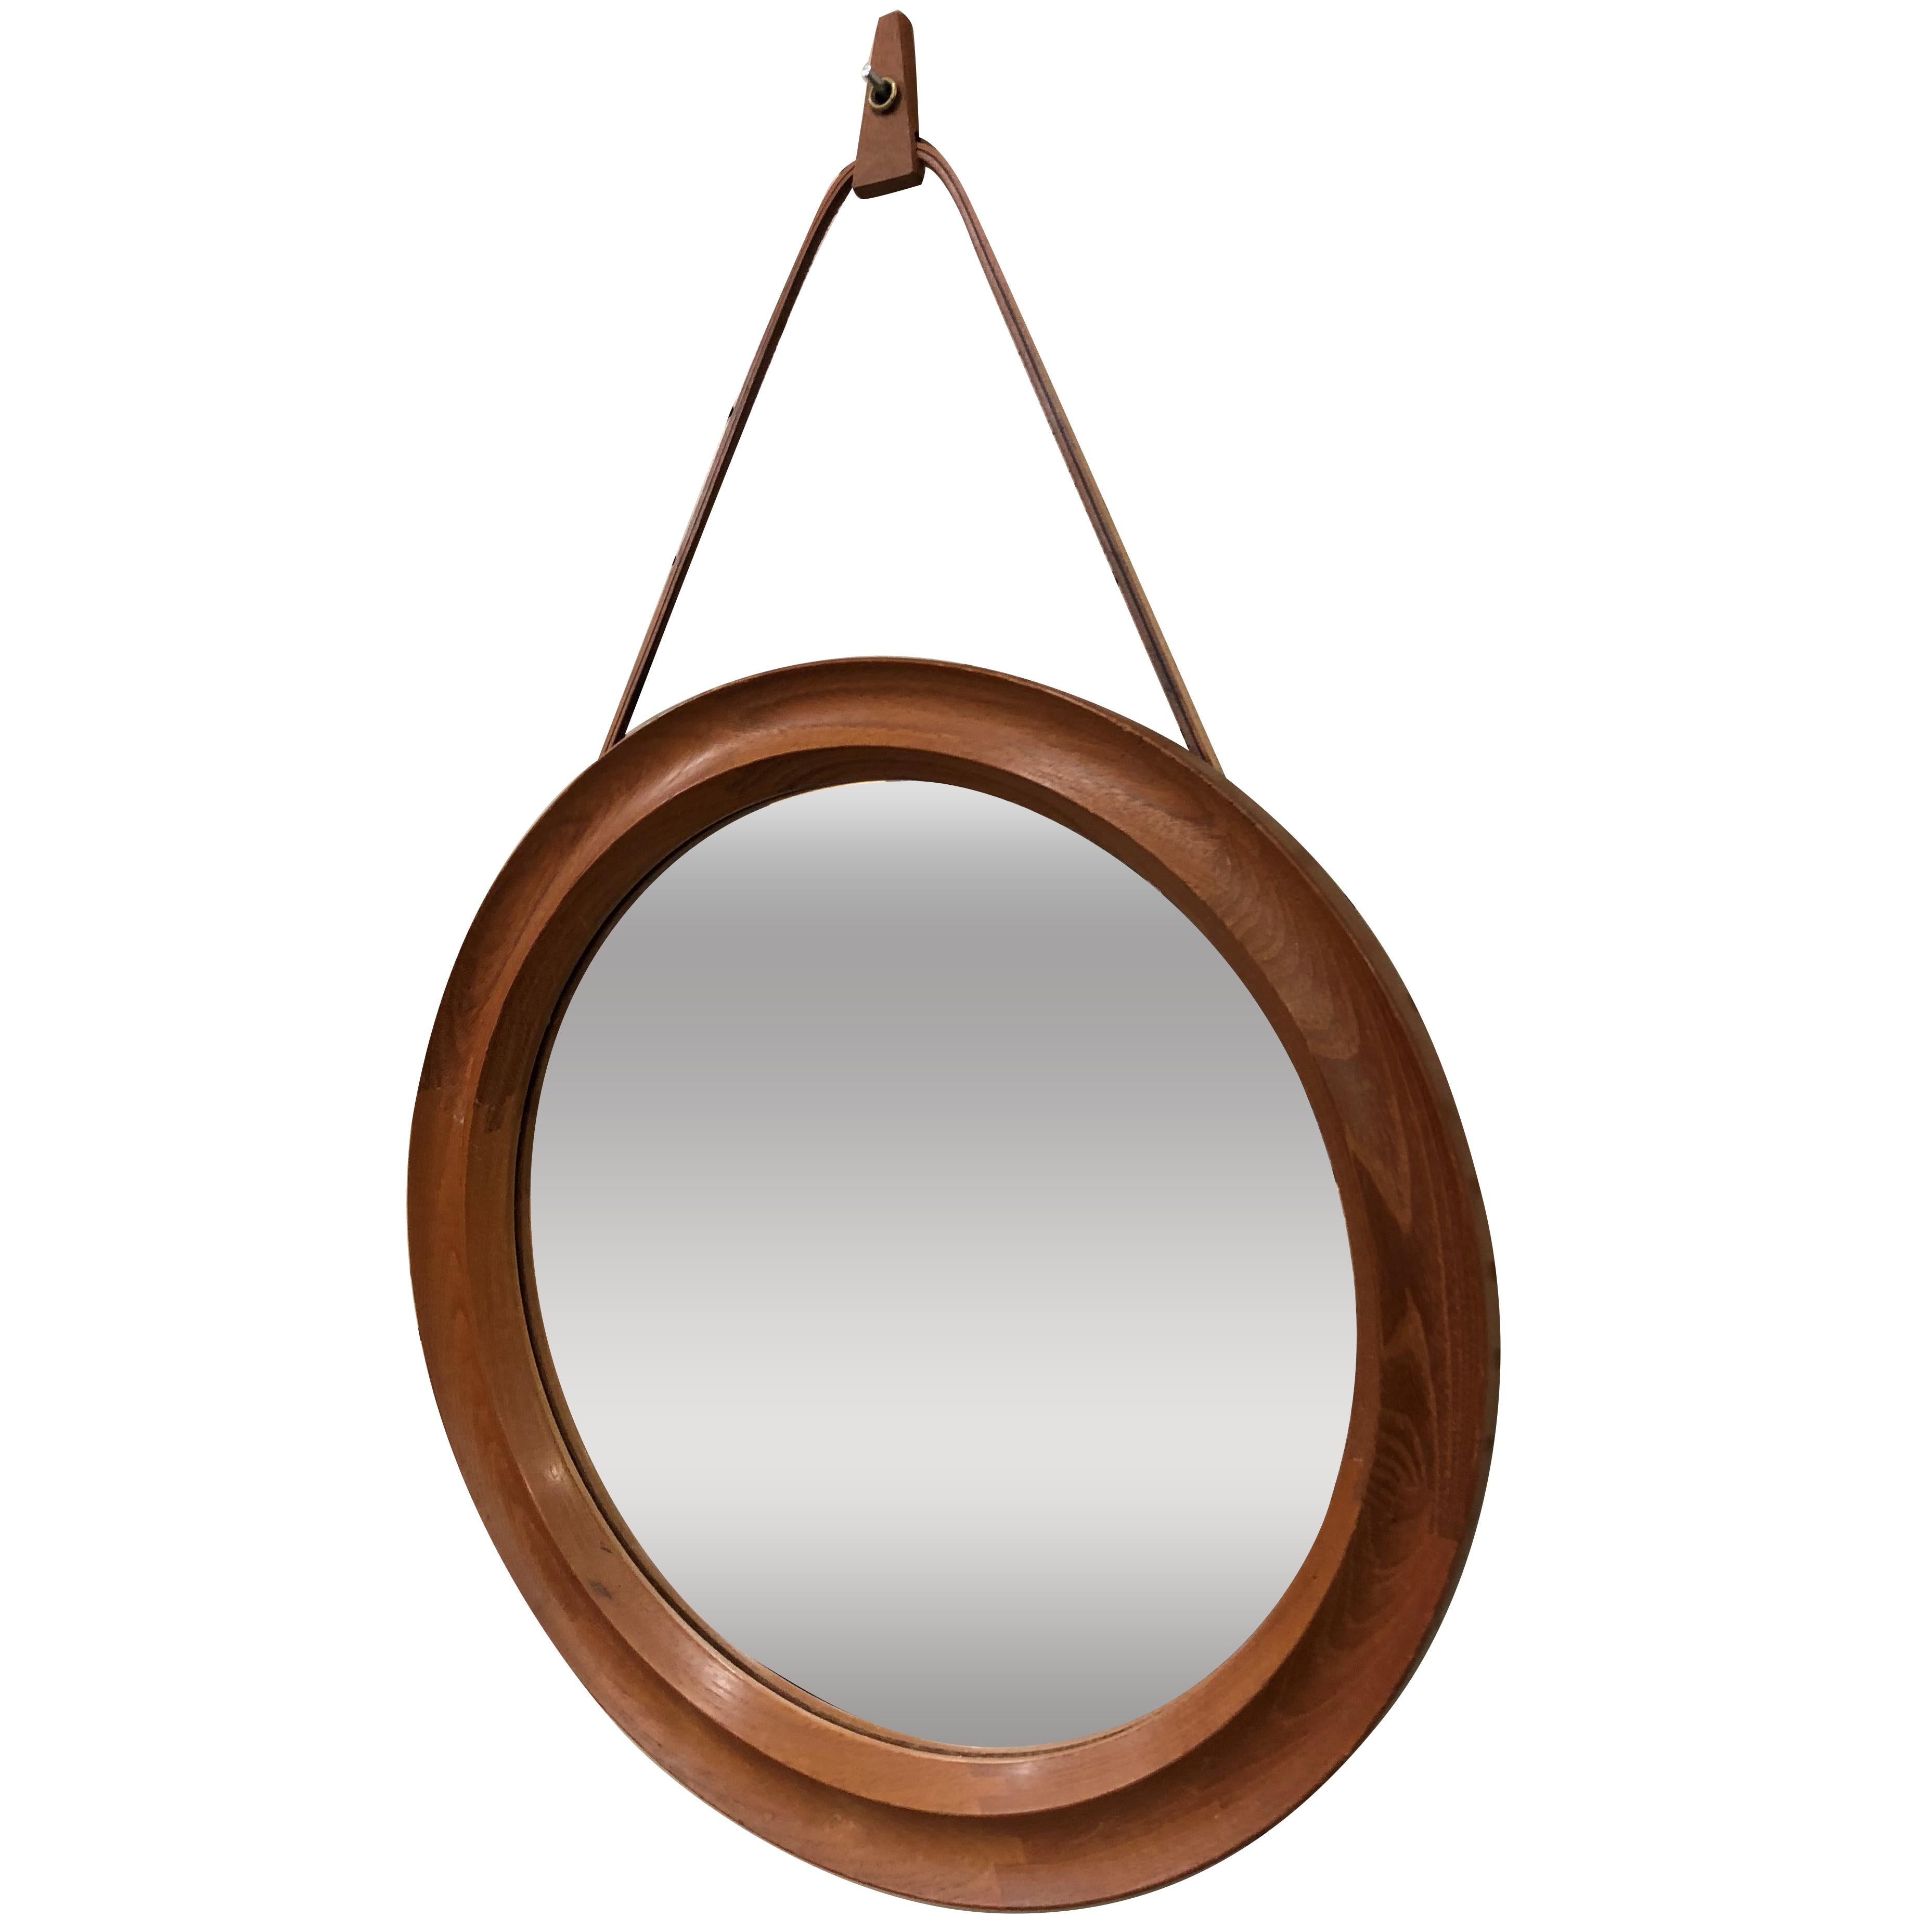 Pedersen & Hansen Danish Teak Oval Mirror with Leather Hanger Strap